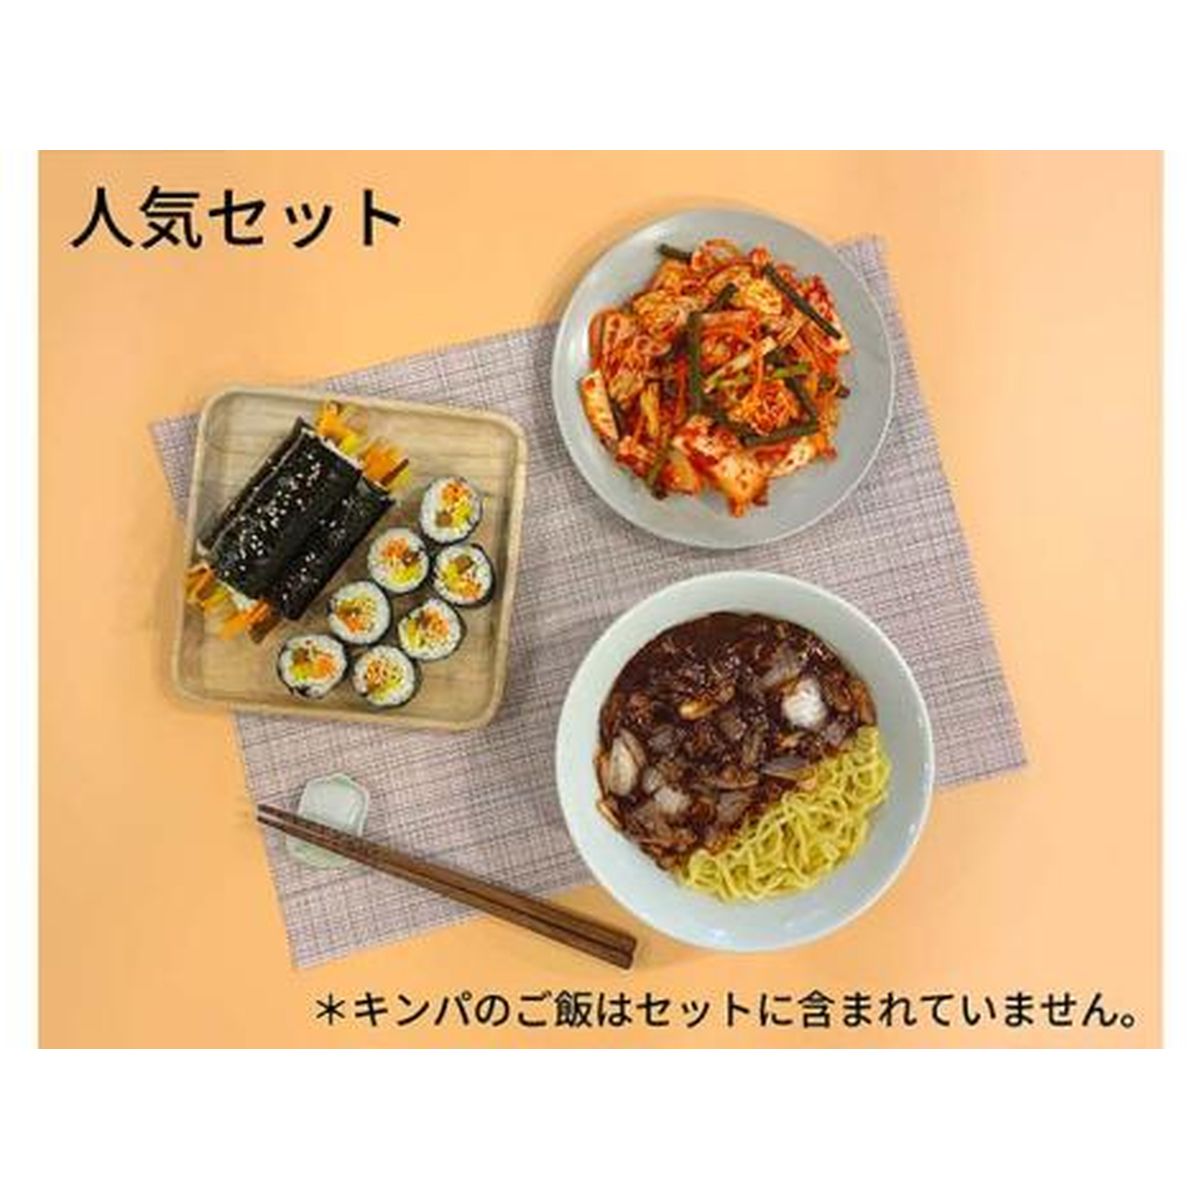 【送料無料】Cookeasy 「冷蔵ミールキット」人気セット(ジャージャー麺 浅漬けキムチ ちびっ子キンパ)